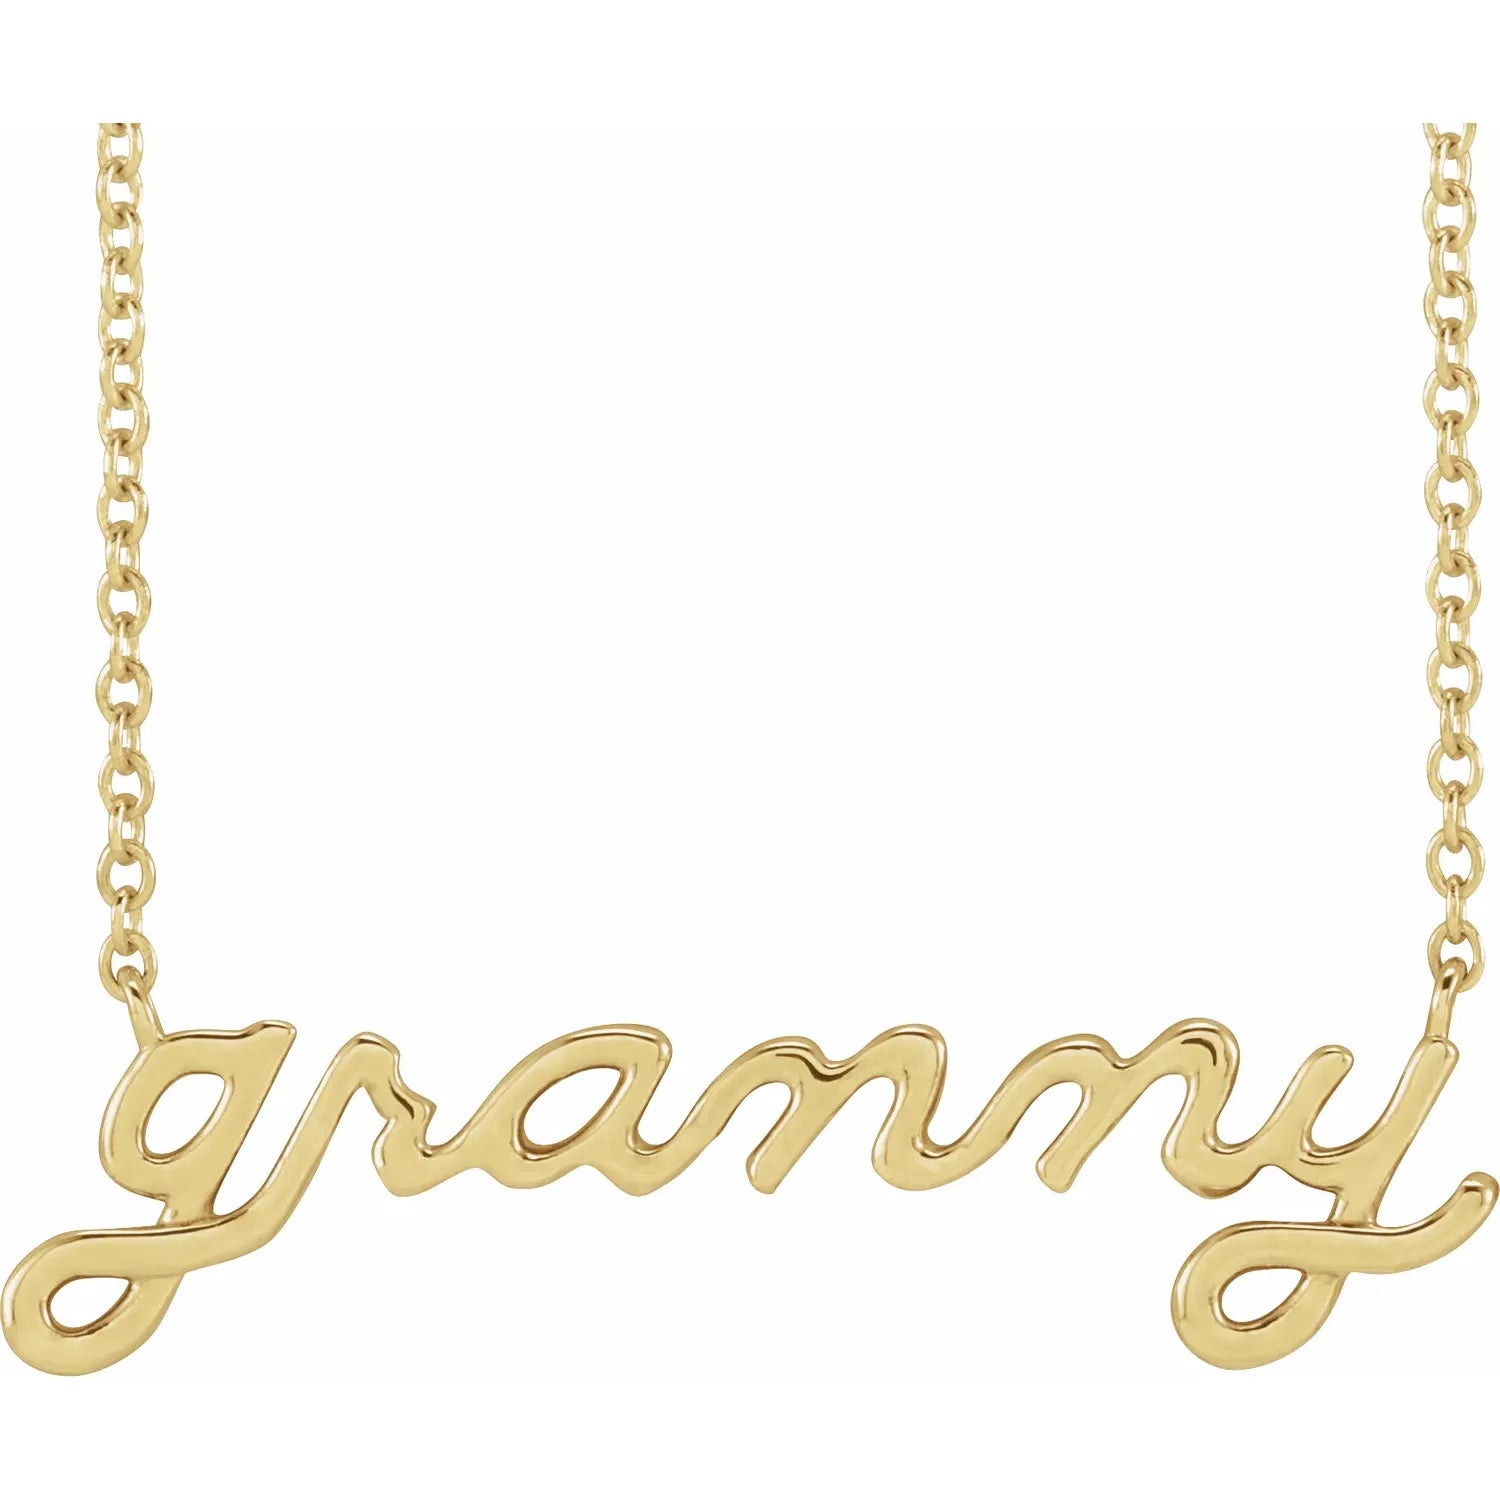 Necklace - "Granny" Script #2324